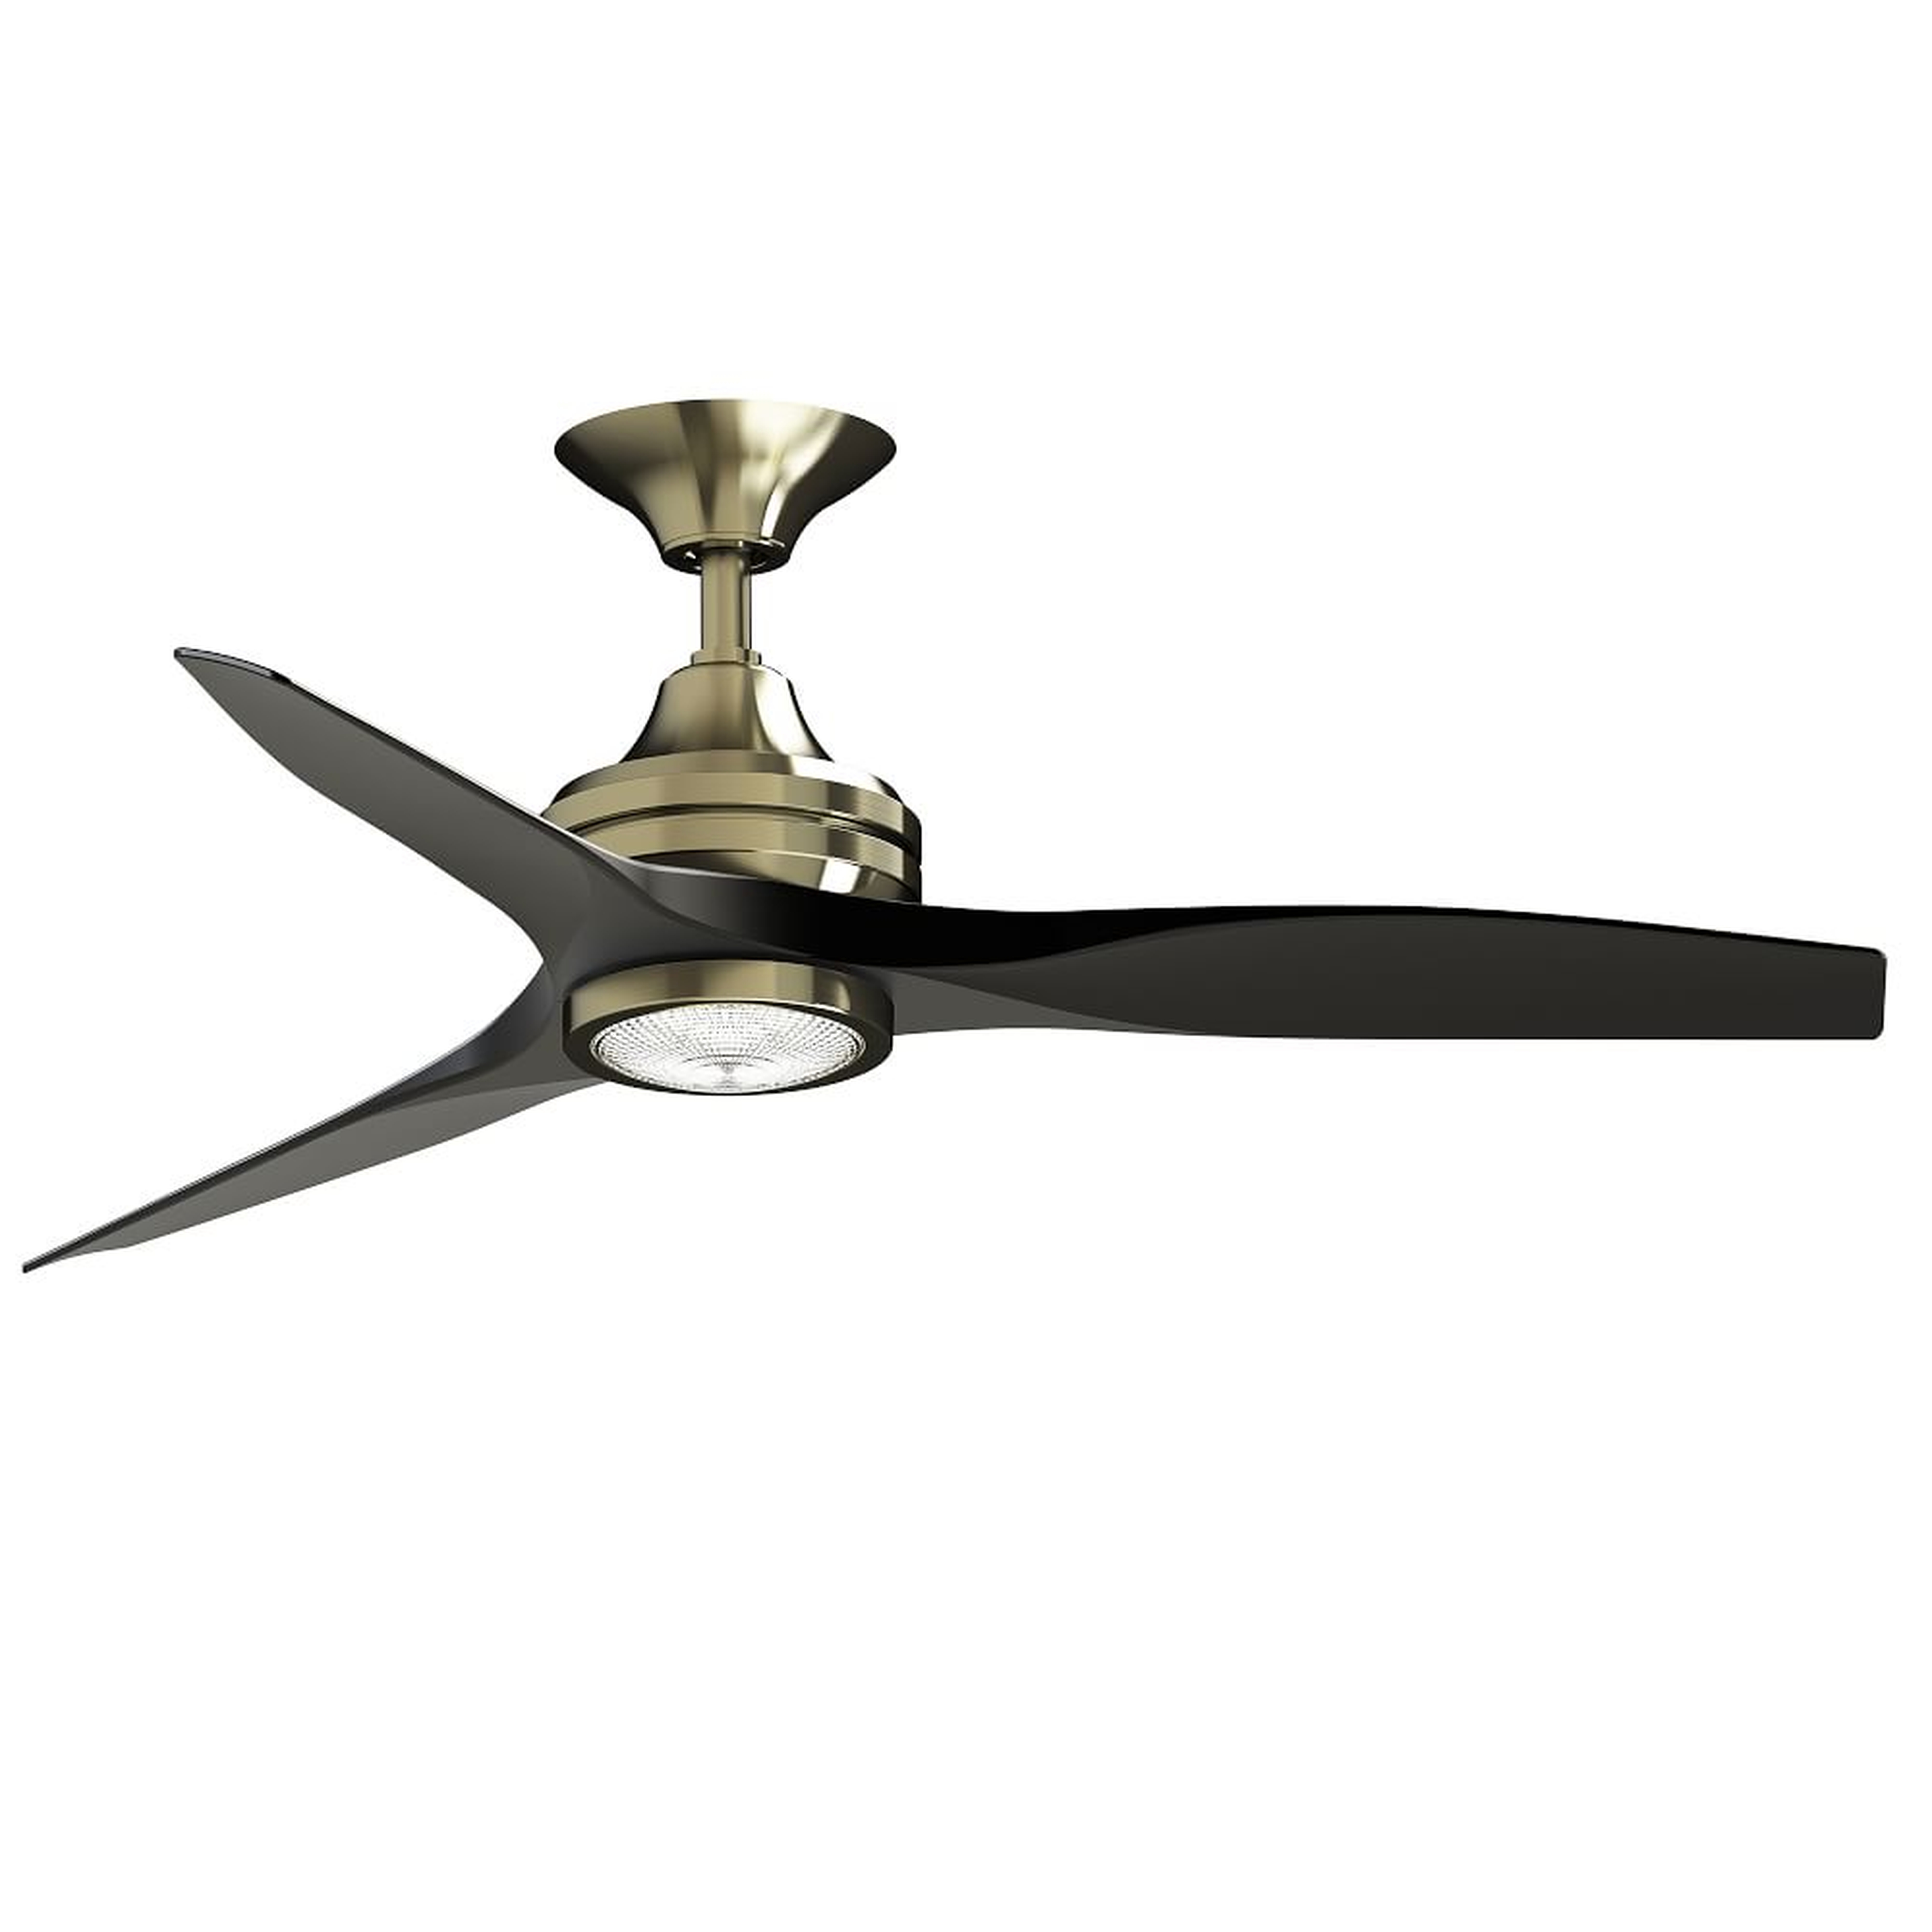 Fanimation Spitfire Ceiling Fan With Light Kit, Polished Brass + Black, 48" - West Elm